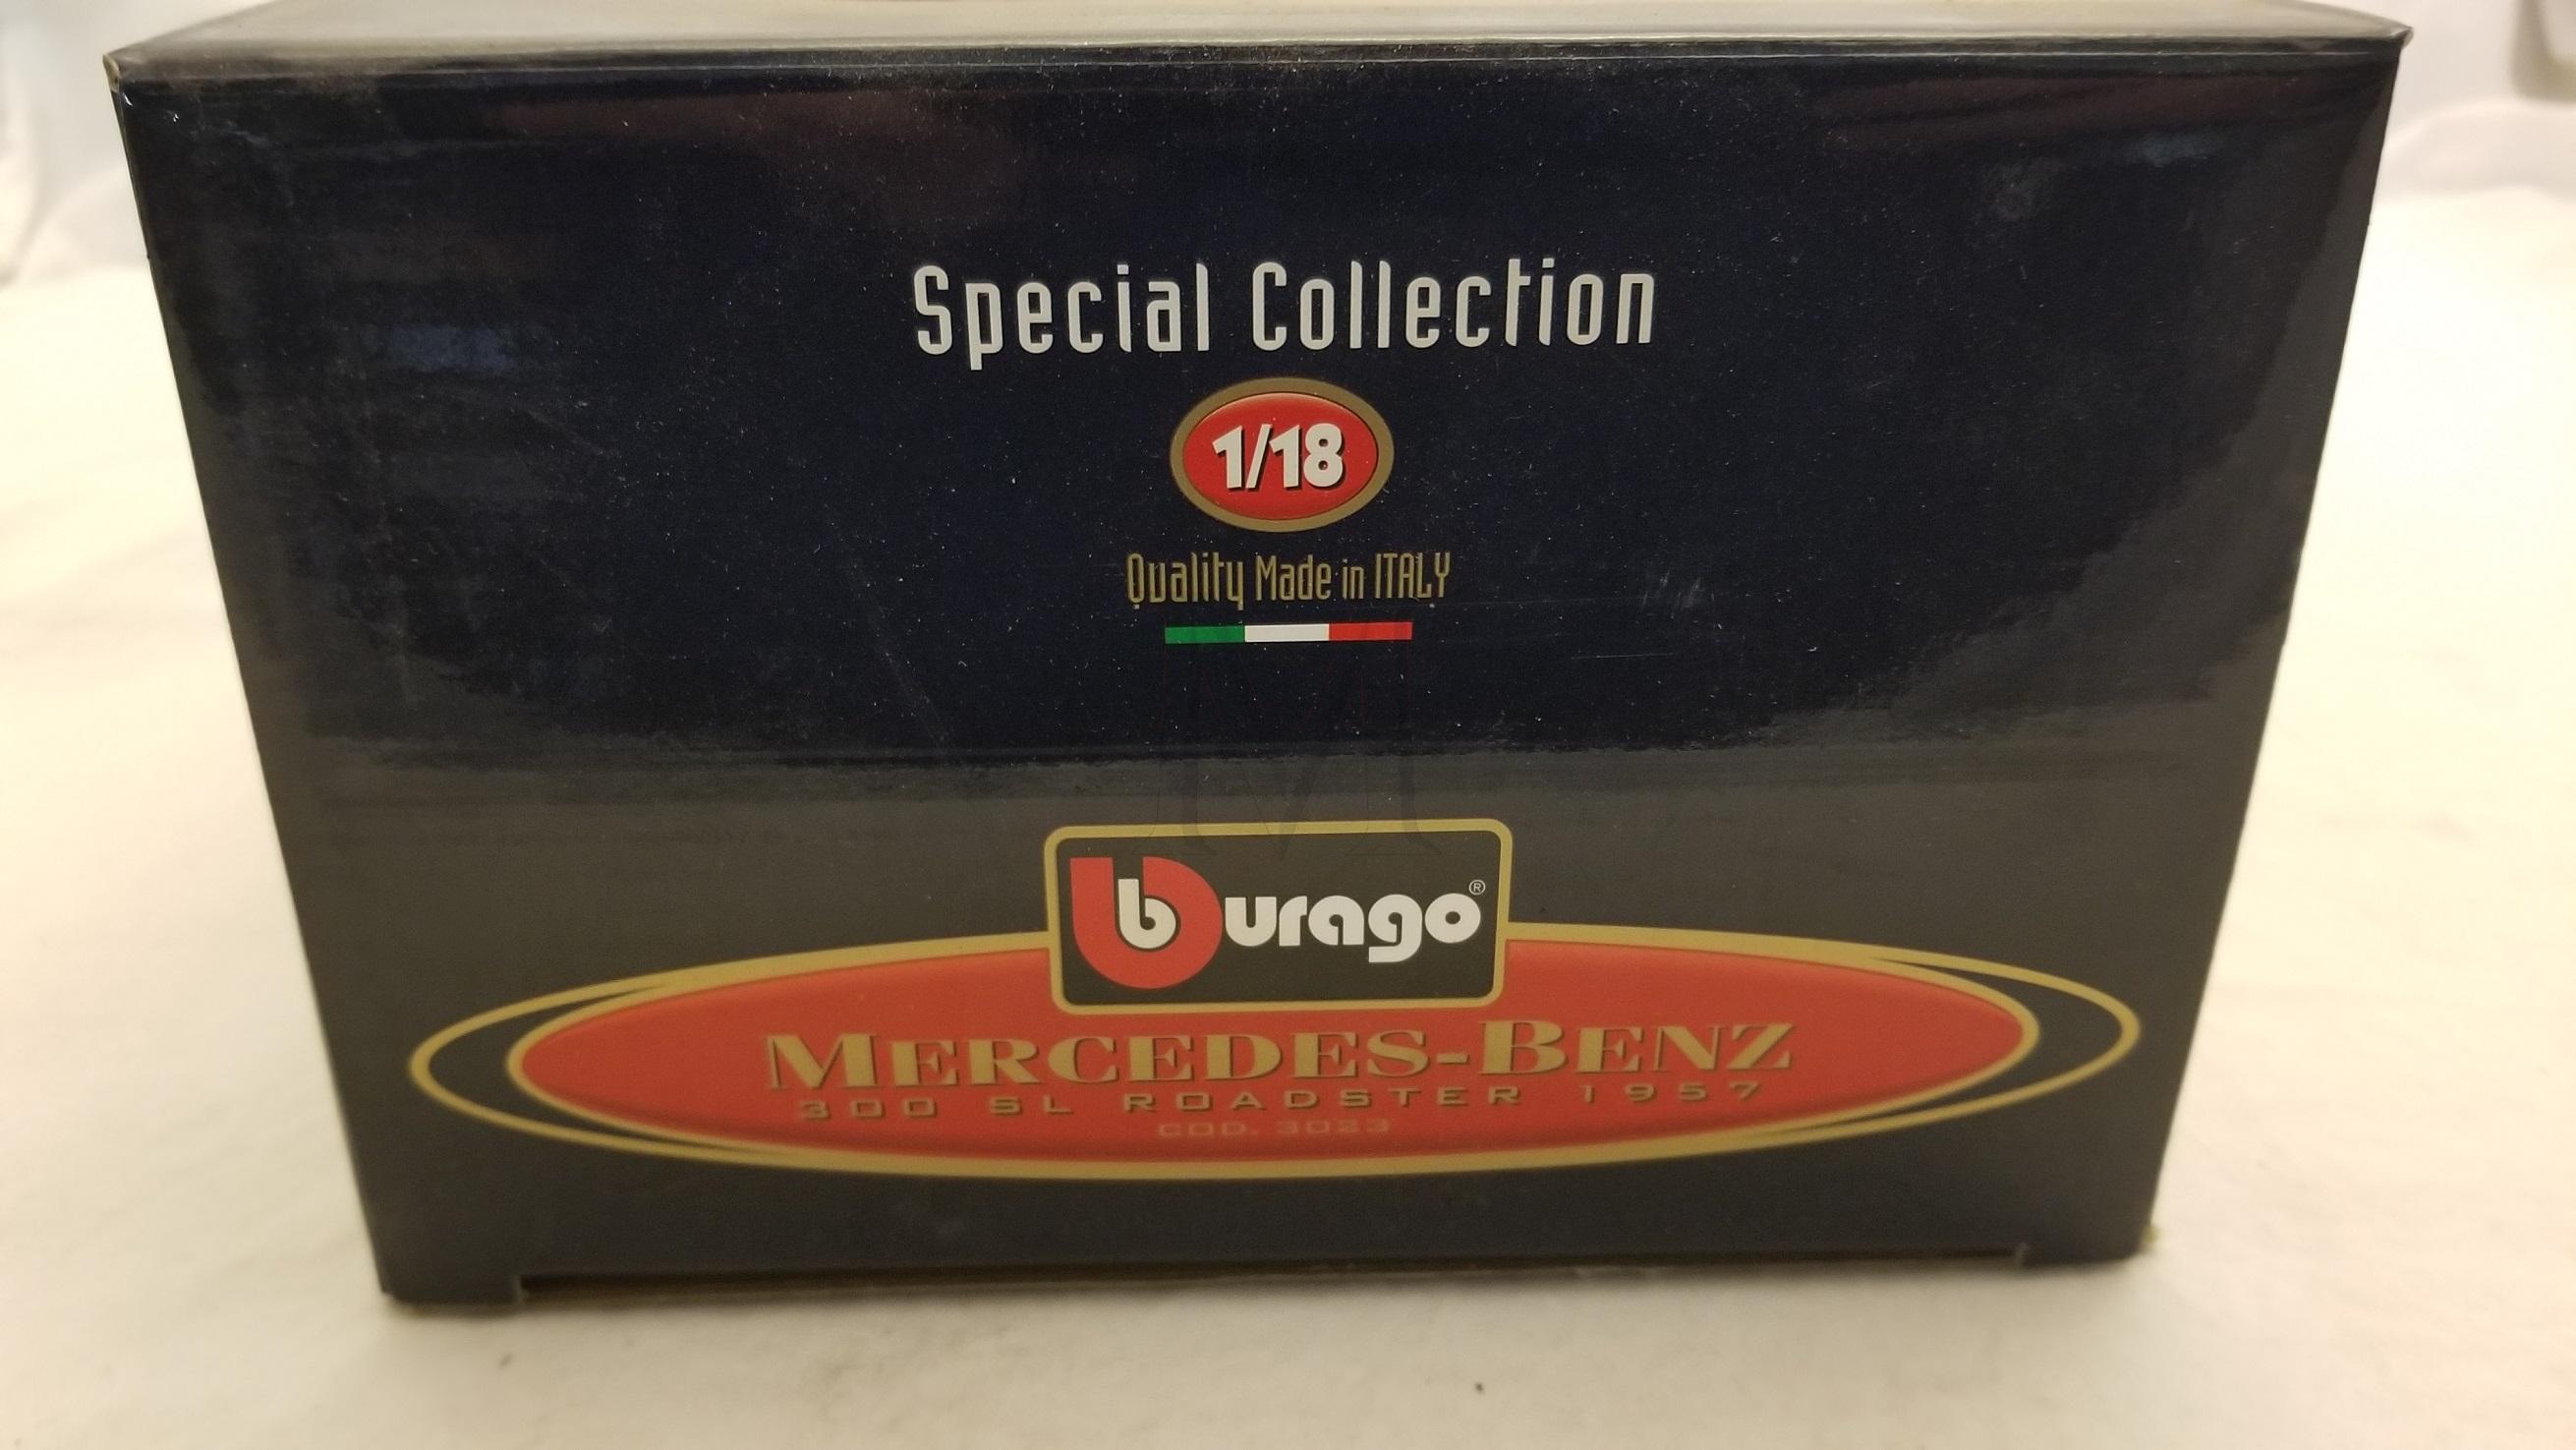 BURAGO SPECIAL COLLECTION 1/18 300SL